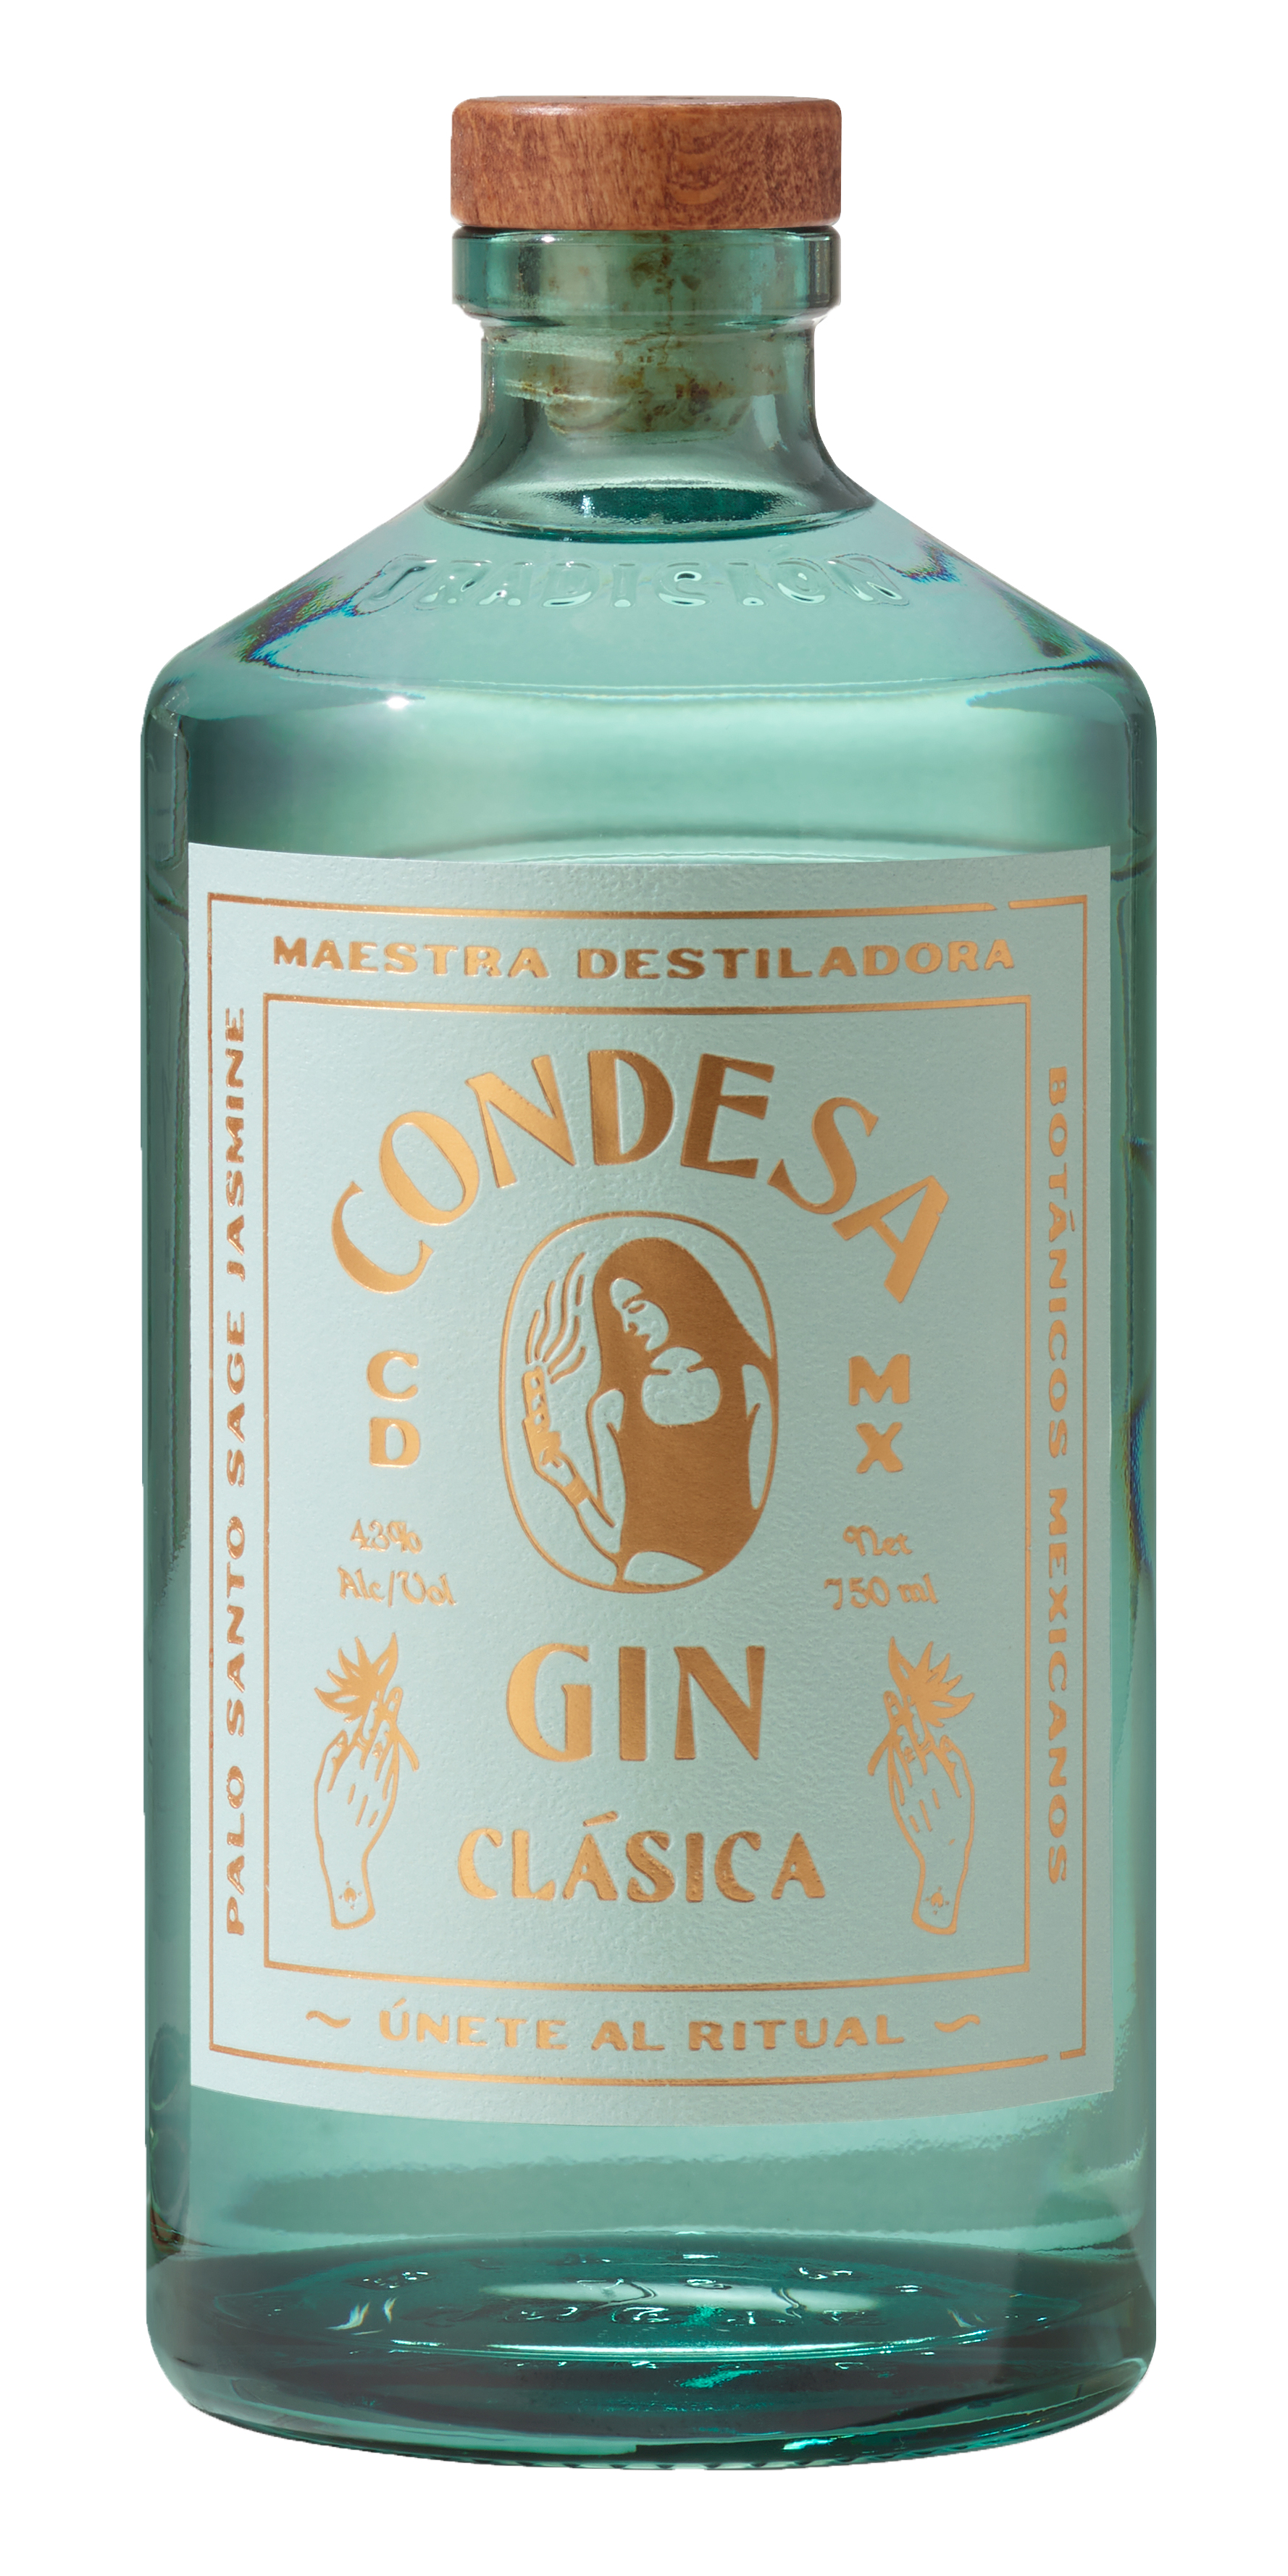 Condesa Clasica Gin                                                                                 